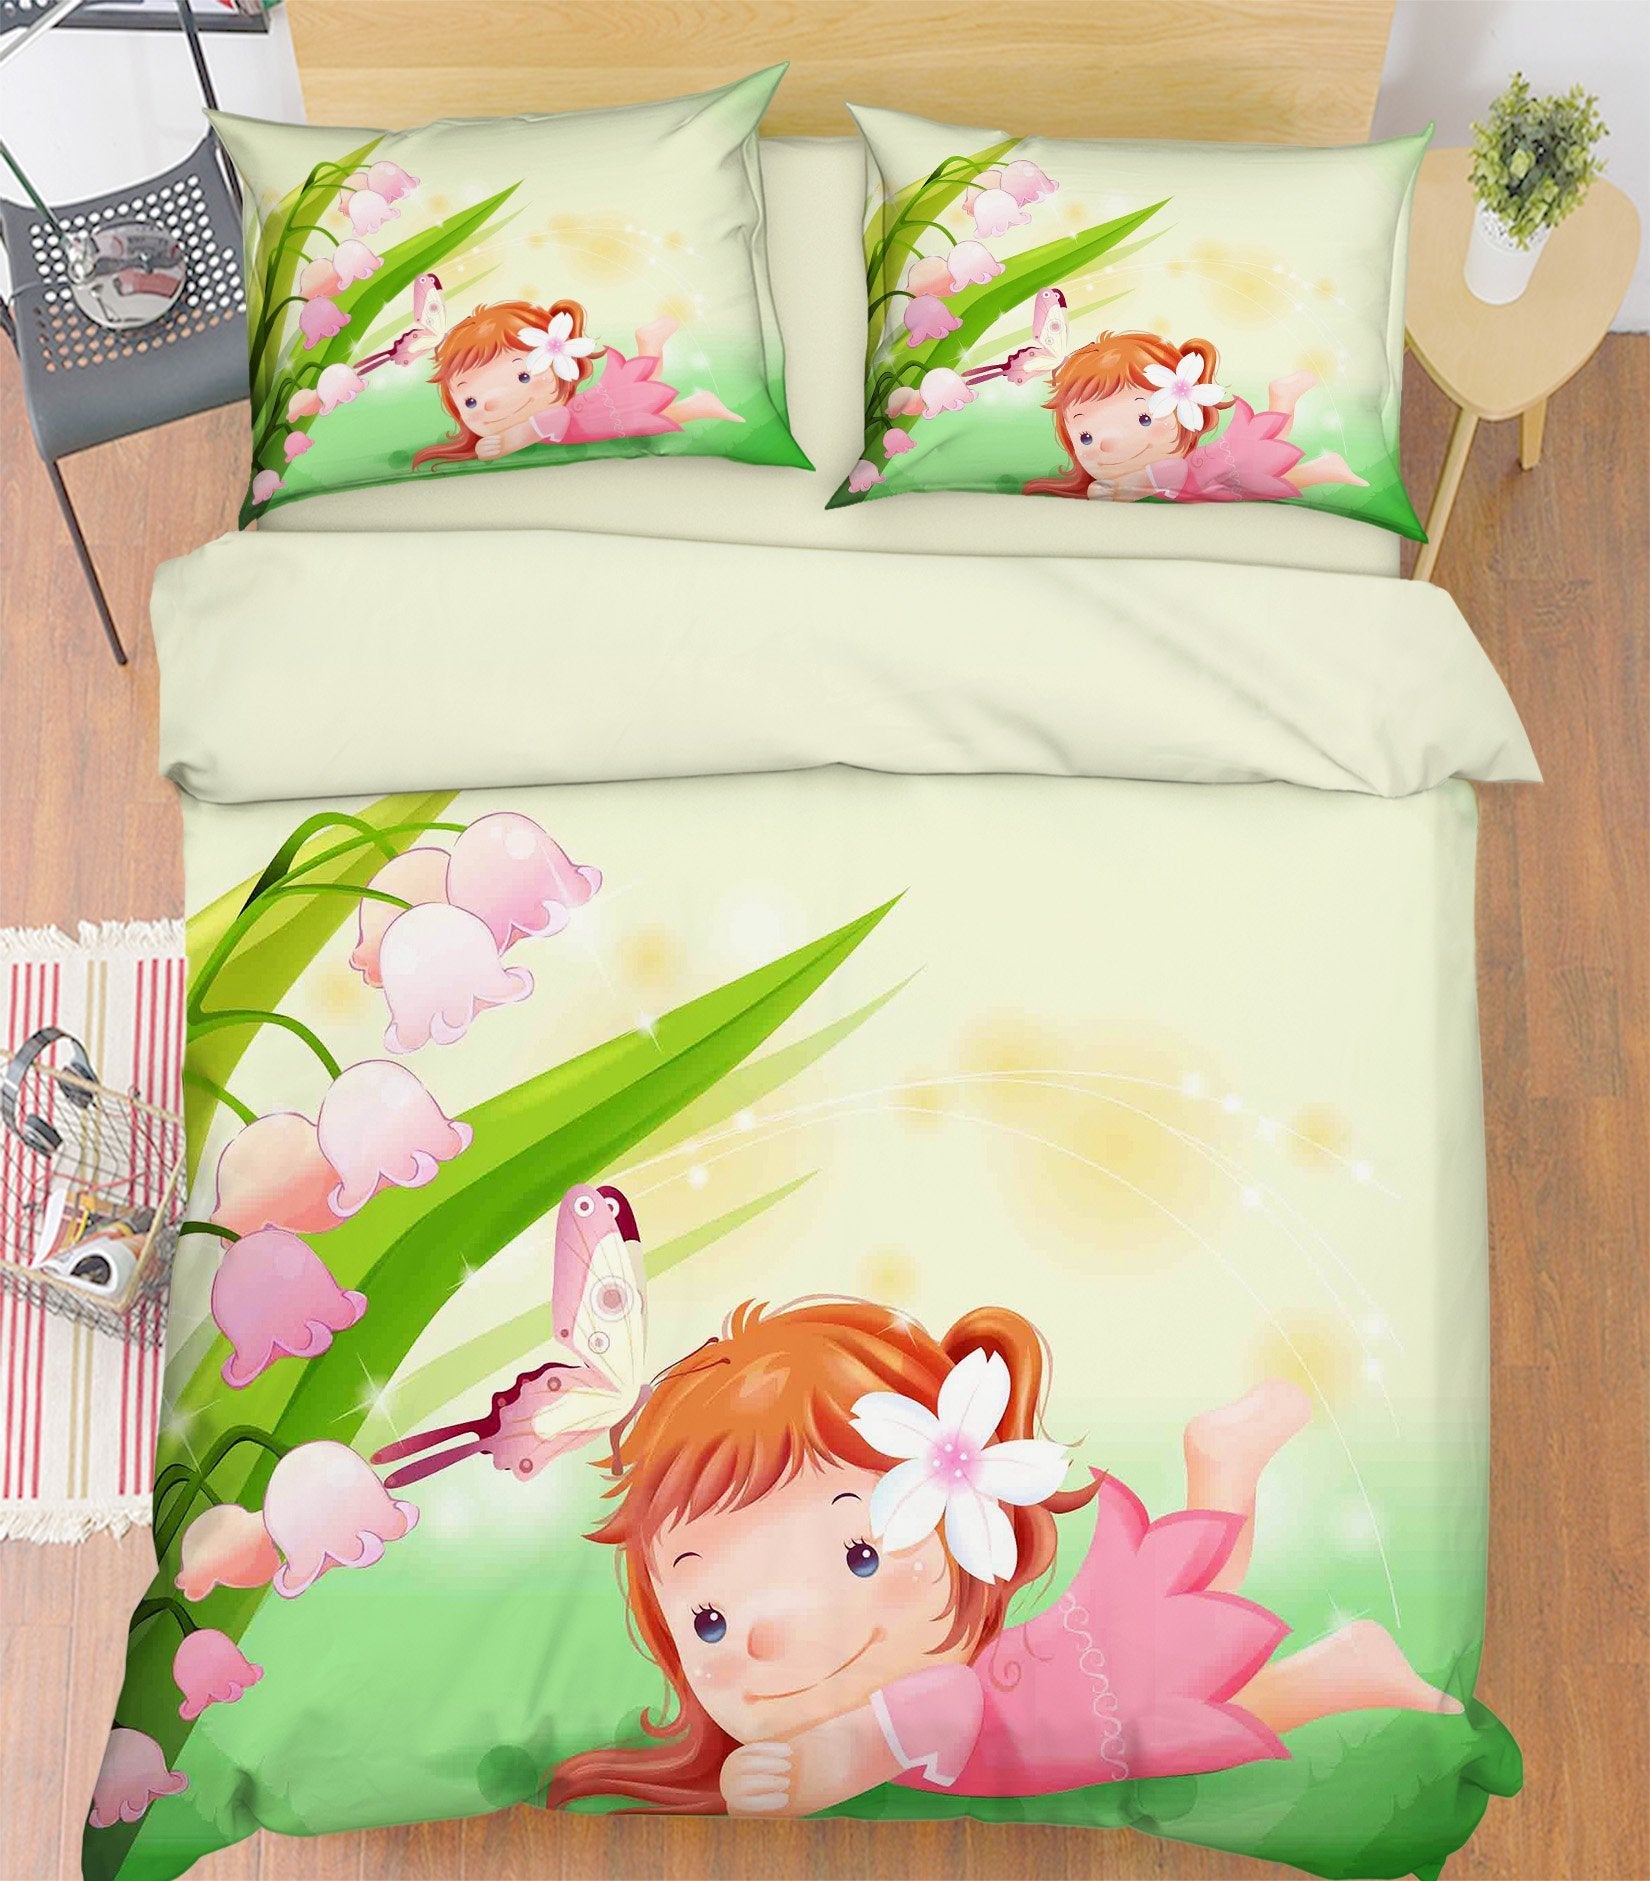 3D Lovely Little Girl 157 Bed Pillowcases Quilt Wallpaper AJ Wallpaper 